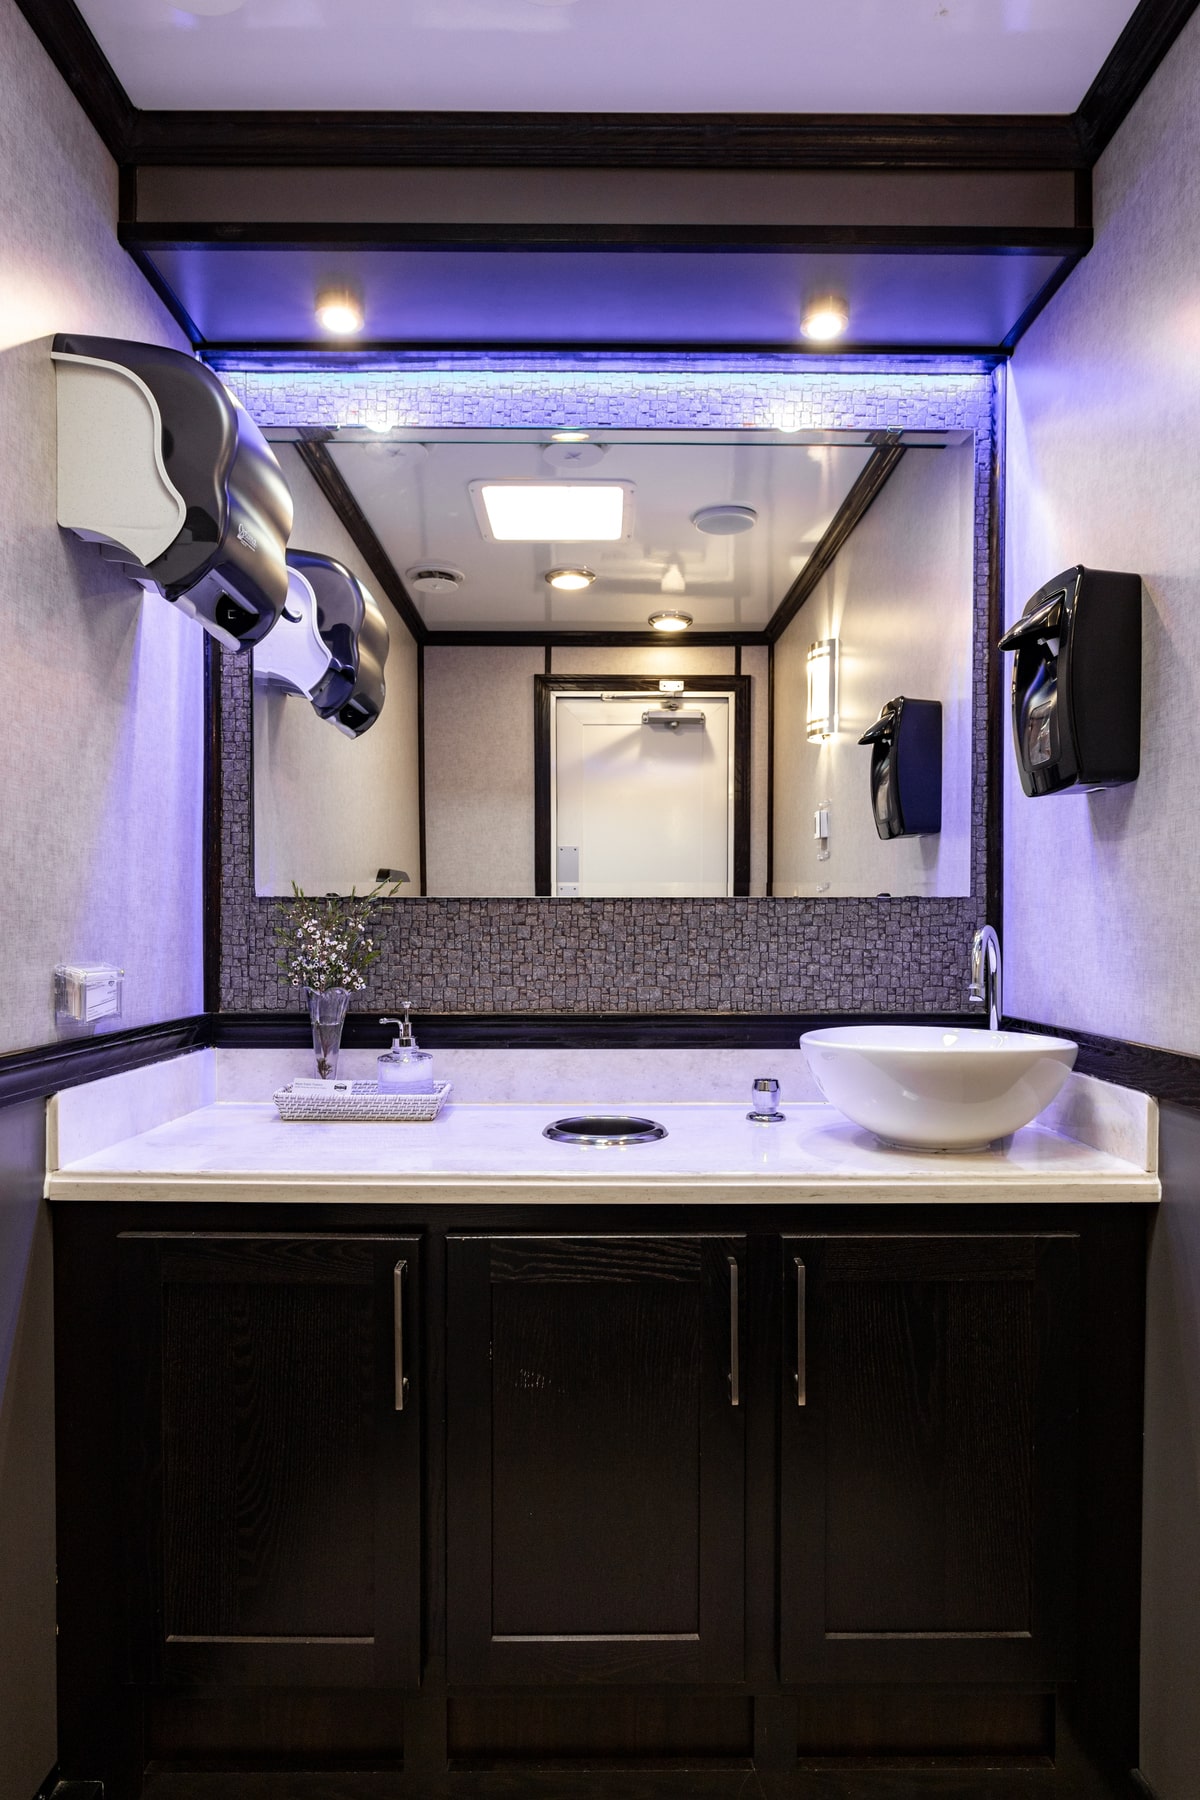 3-Station Luxury Restroom Trailer Rental – Interior View 9